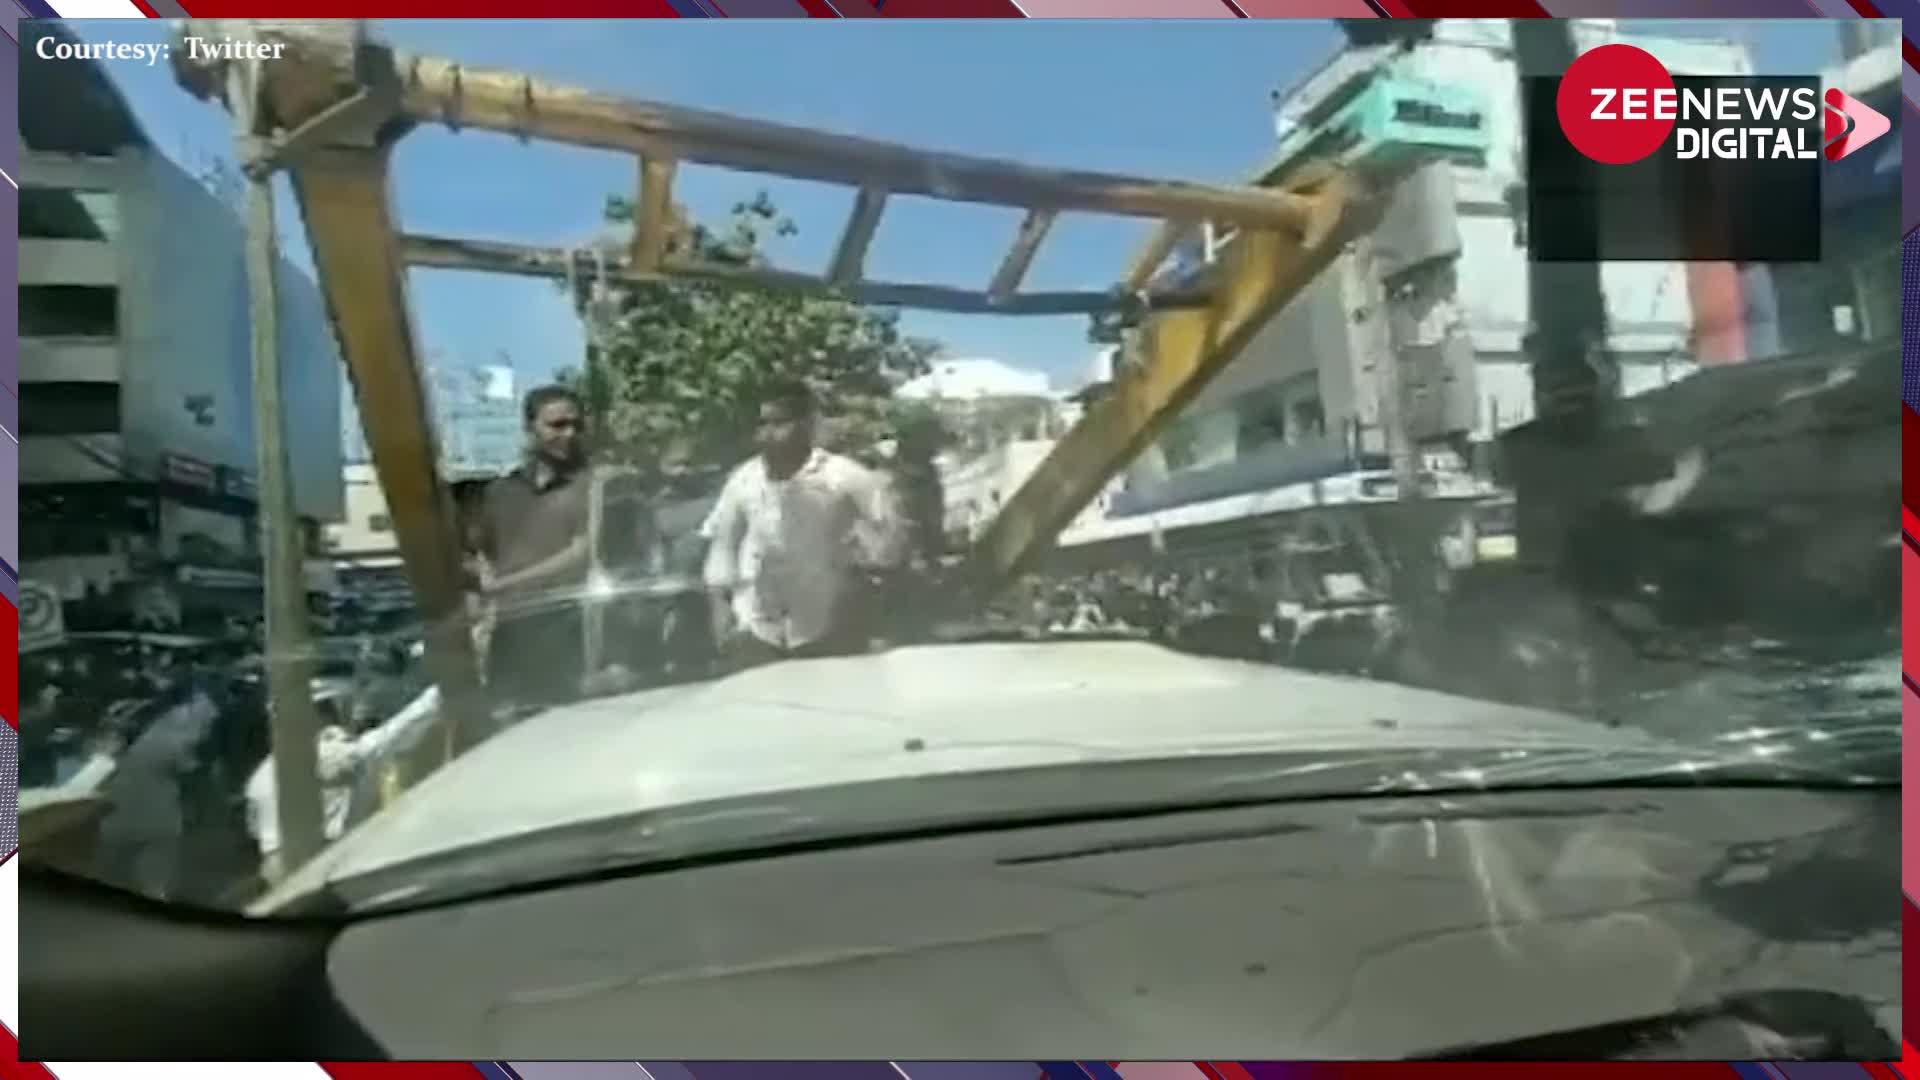 तेलंगाना: कार में बैठी थीं मुख्यमंत्री की बहन, पुलिस आई और गाड़ी समेत उठा ले गई, देखें Video